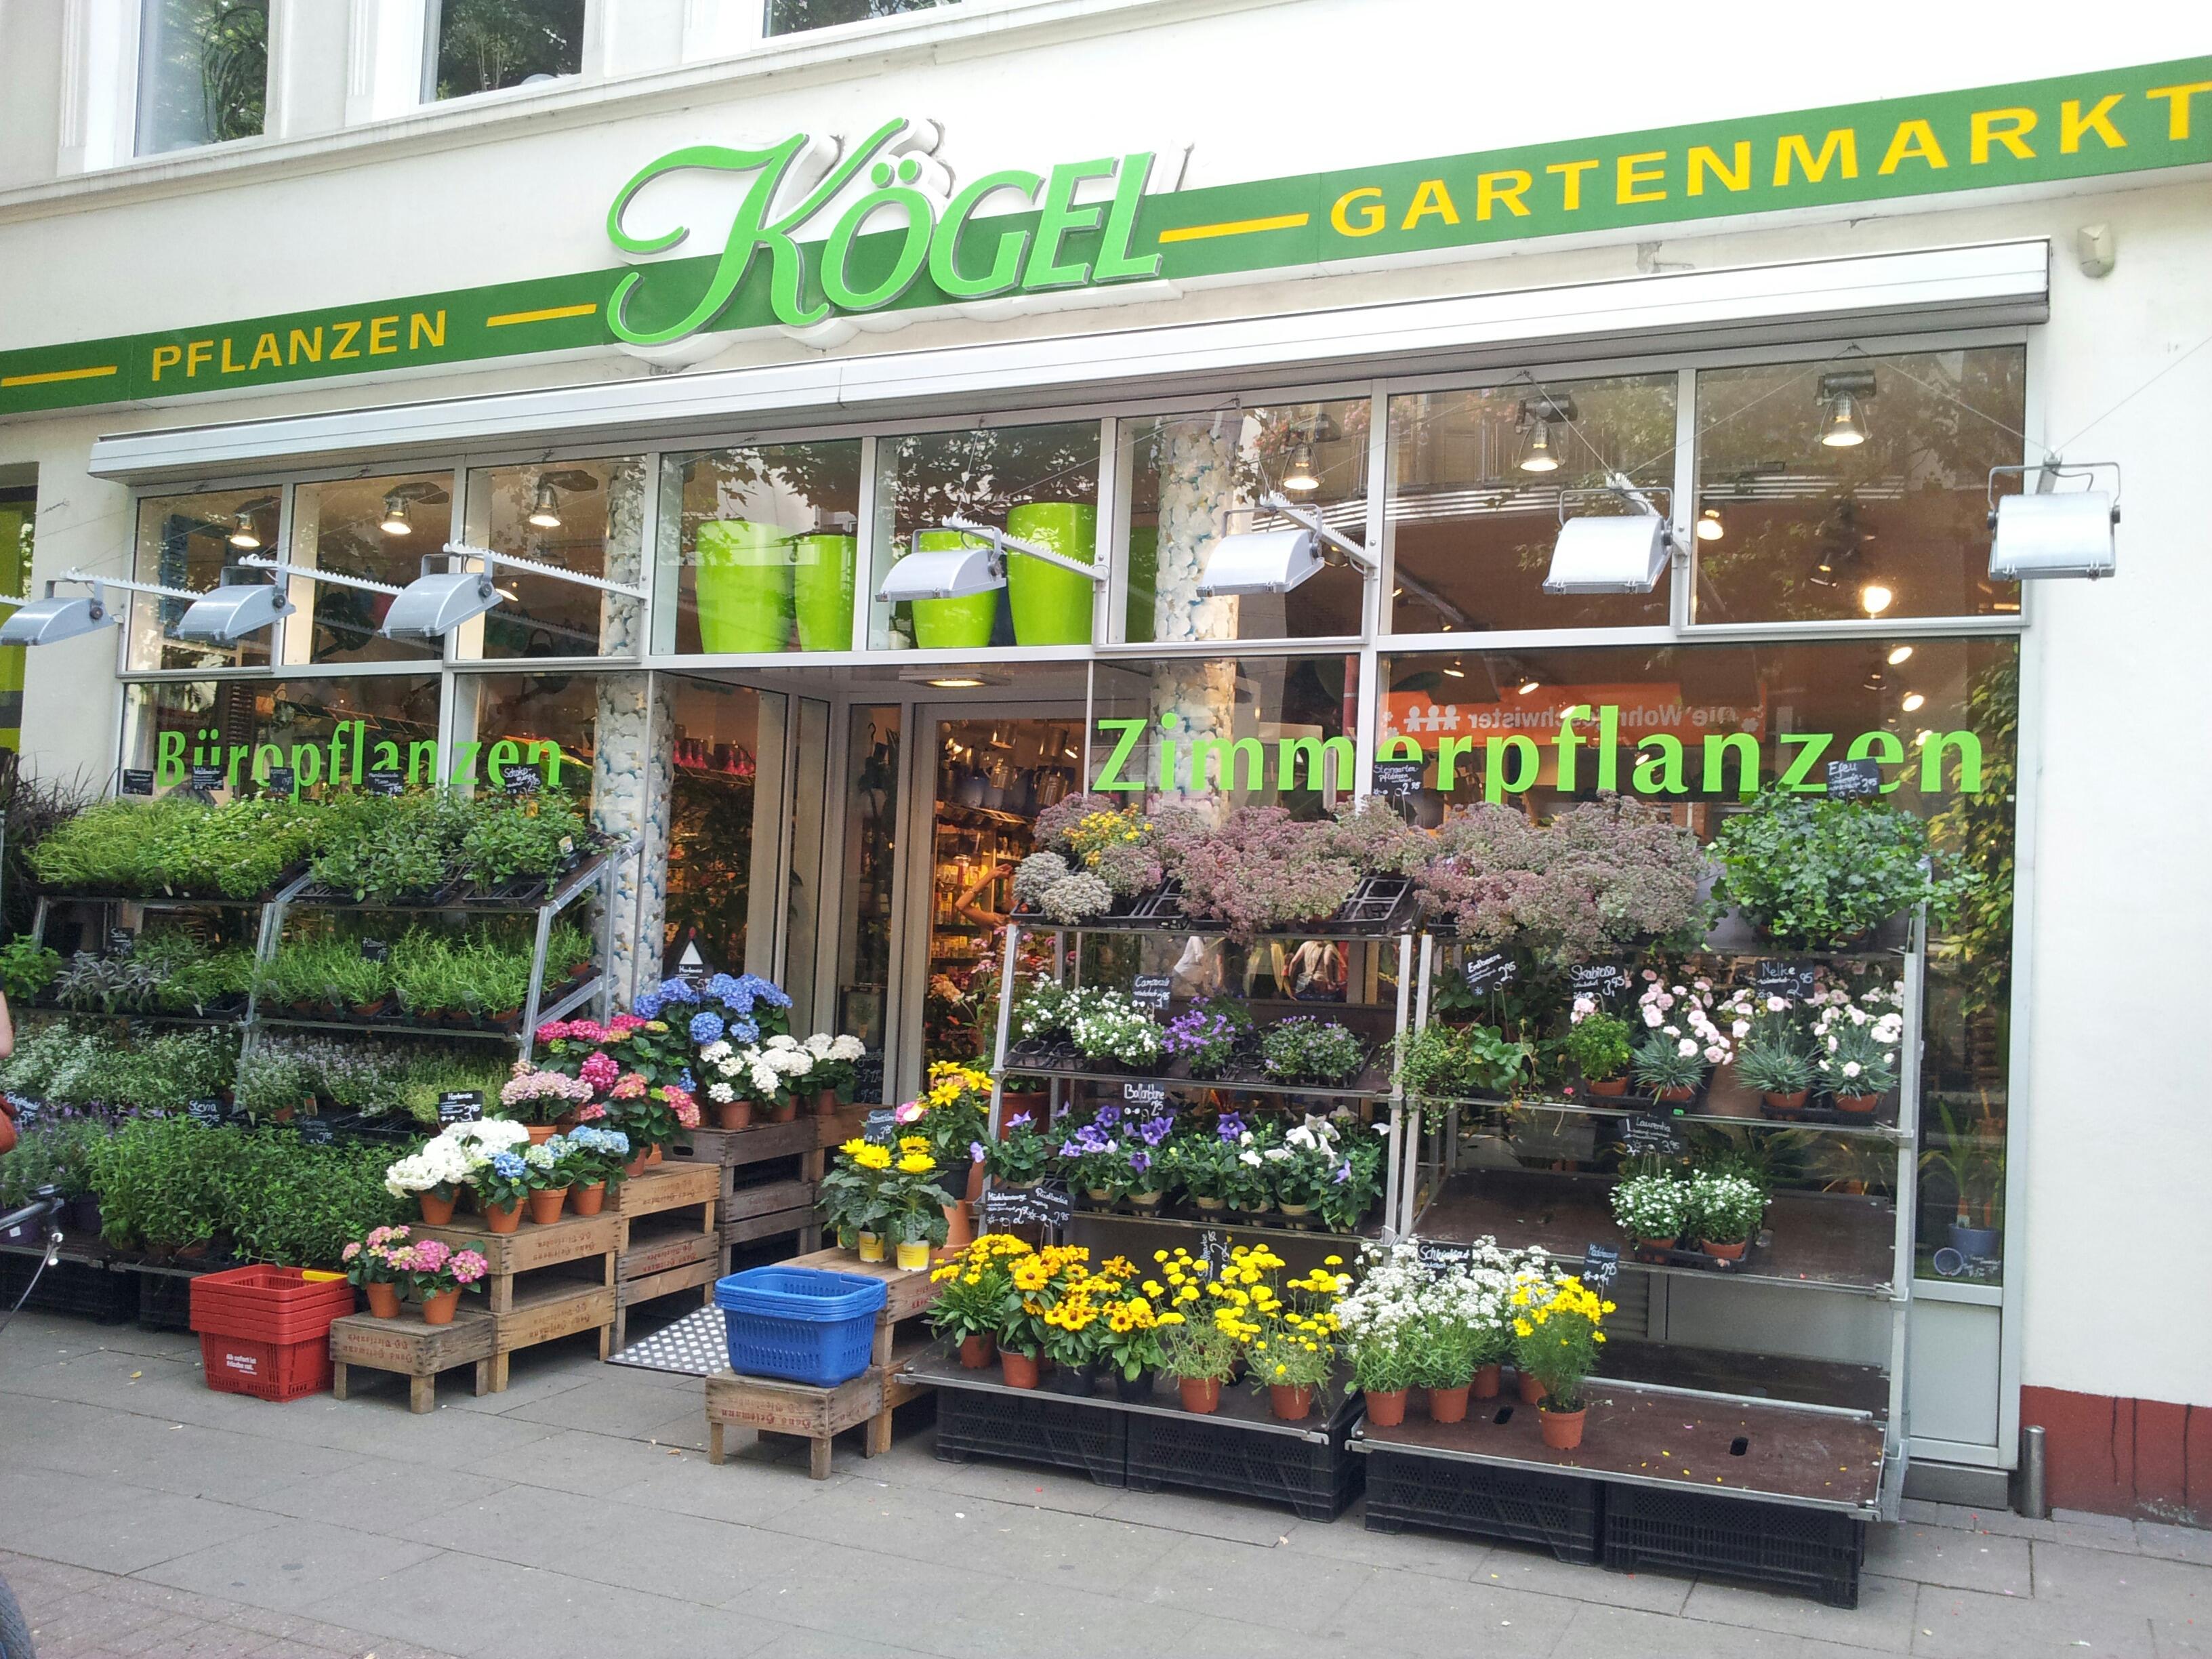 ➤ Kögel Gartenmarkt Pflanzeneinzelhandel 20357 Hamburg-Sternschanze Adresse  | Telefon | Kontakt